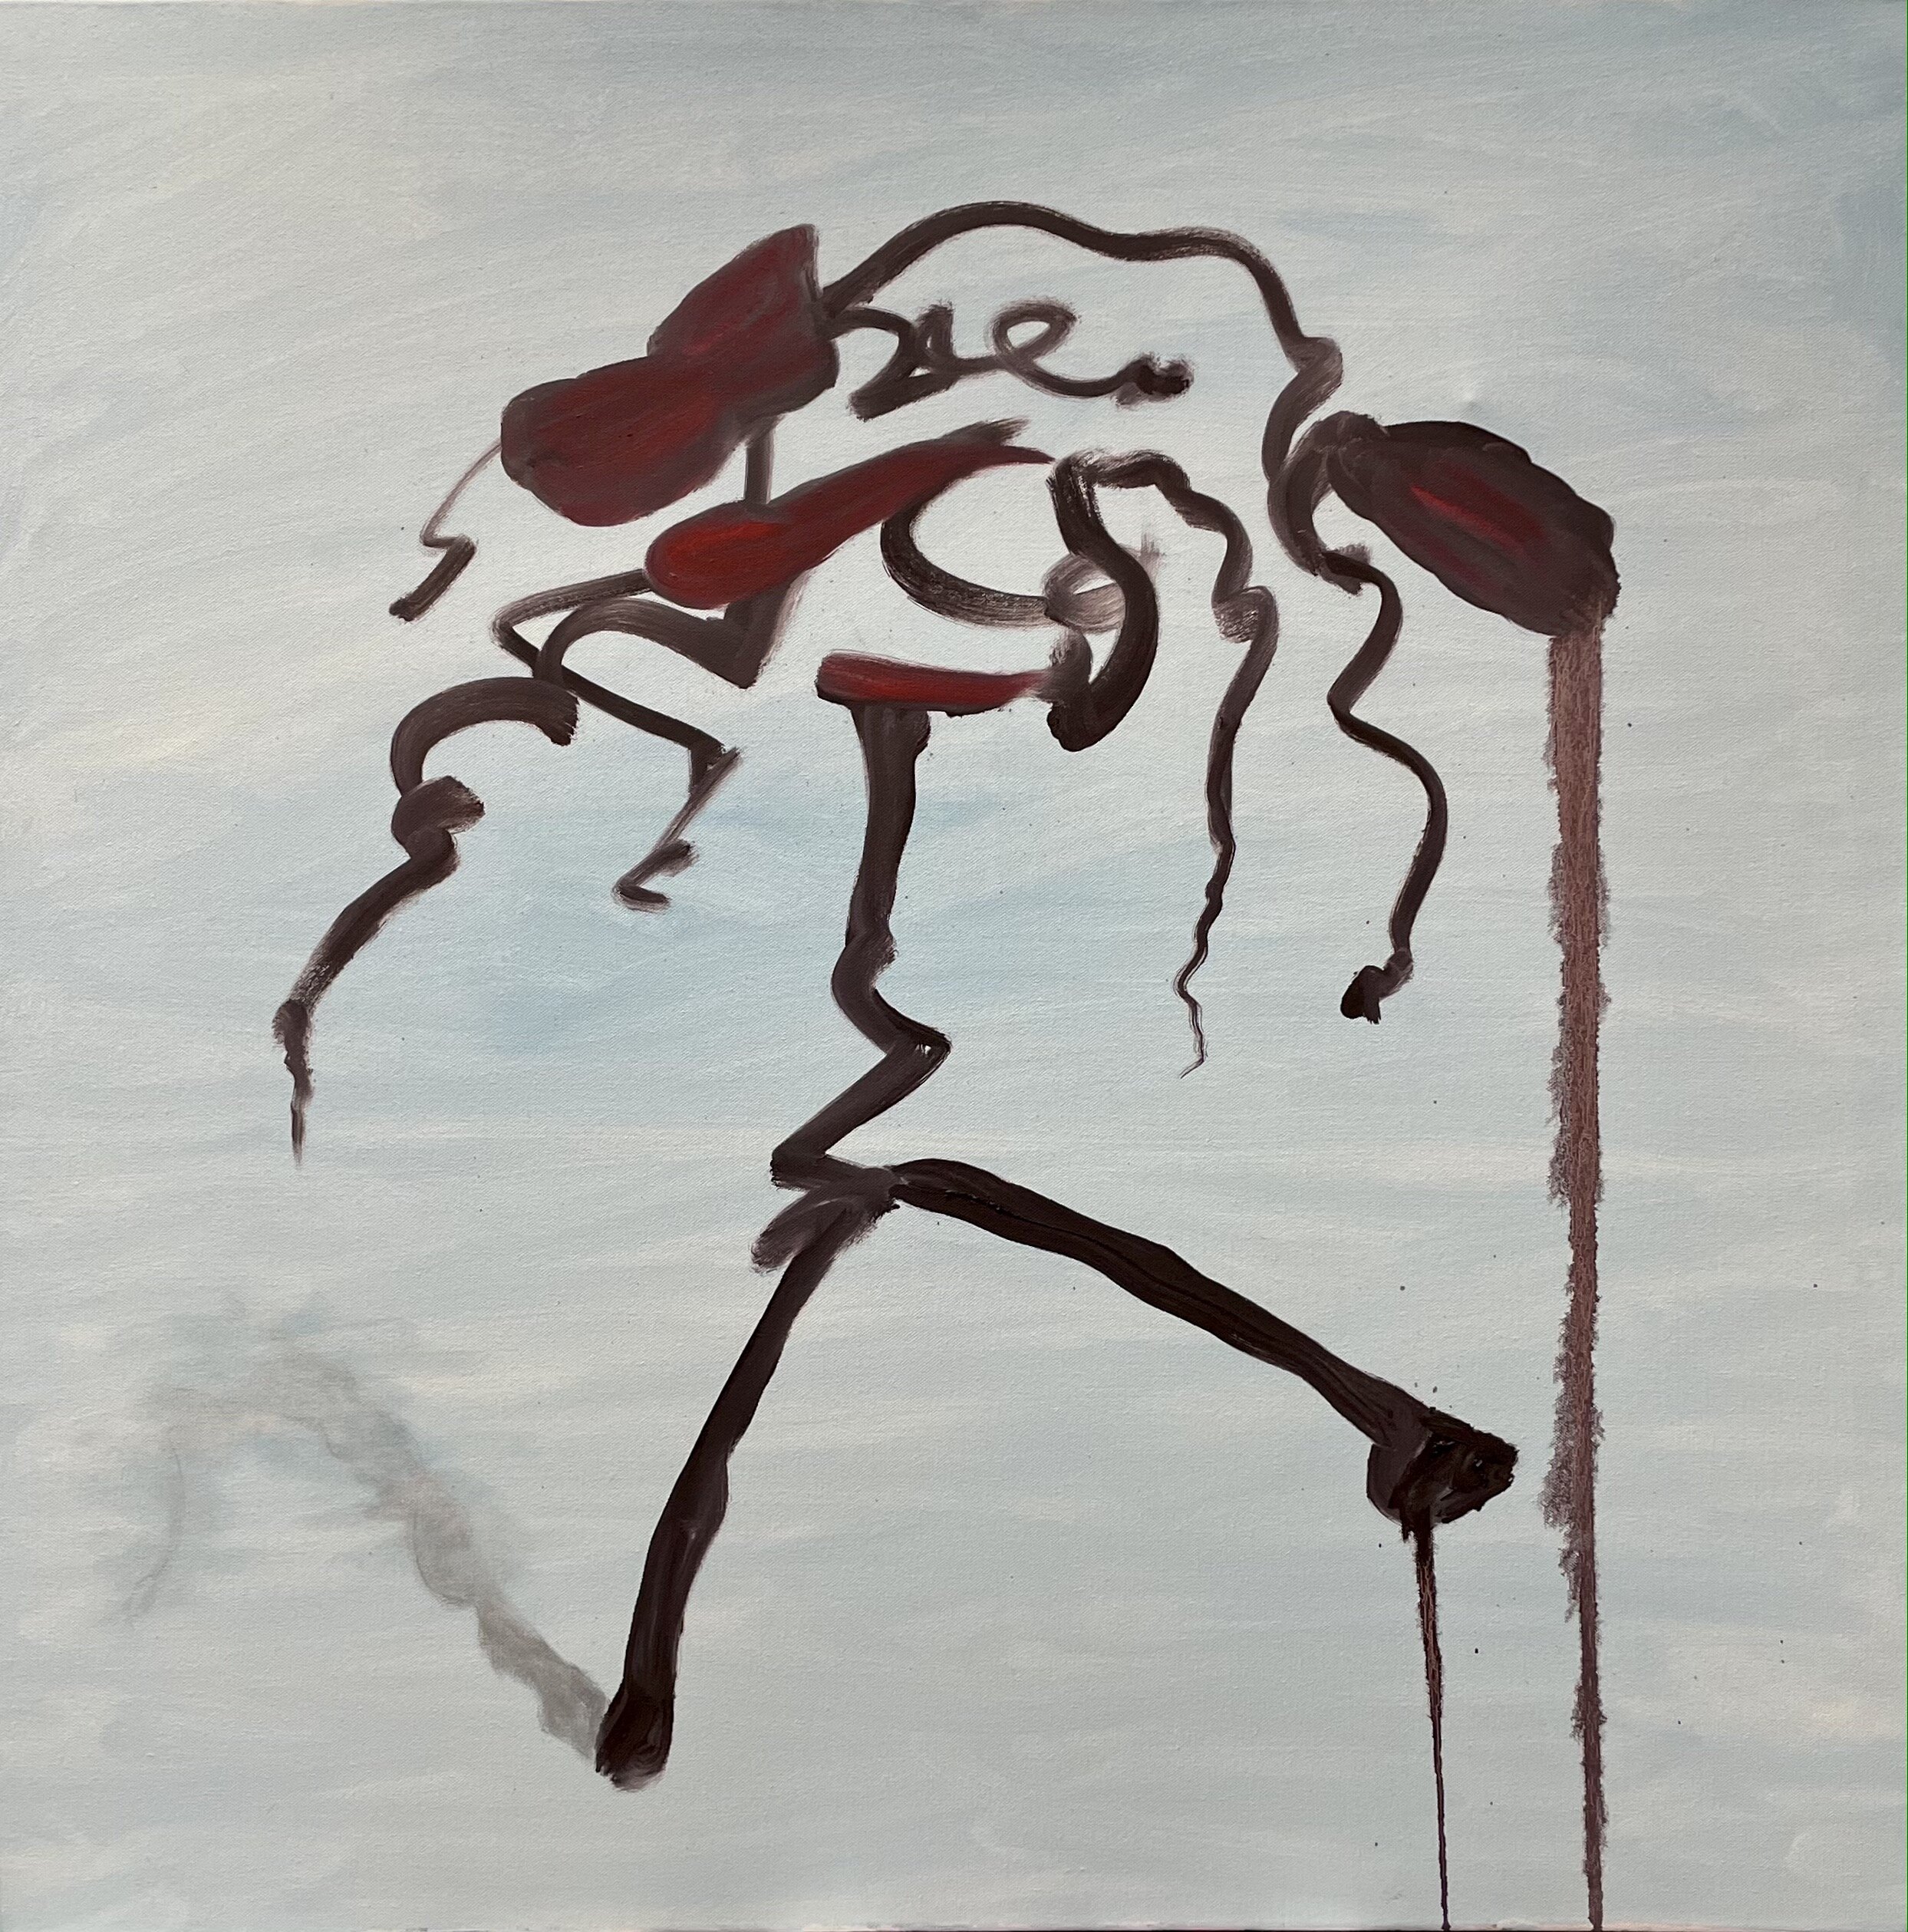 Balance, oil on canvas, 36"x36", 2020